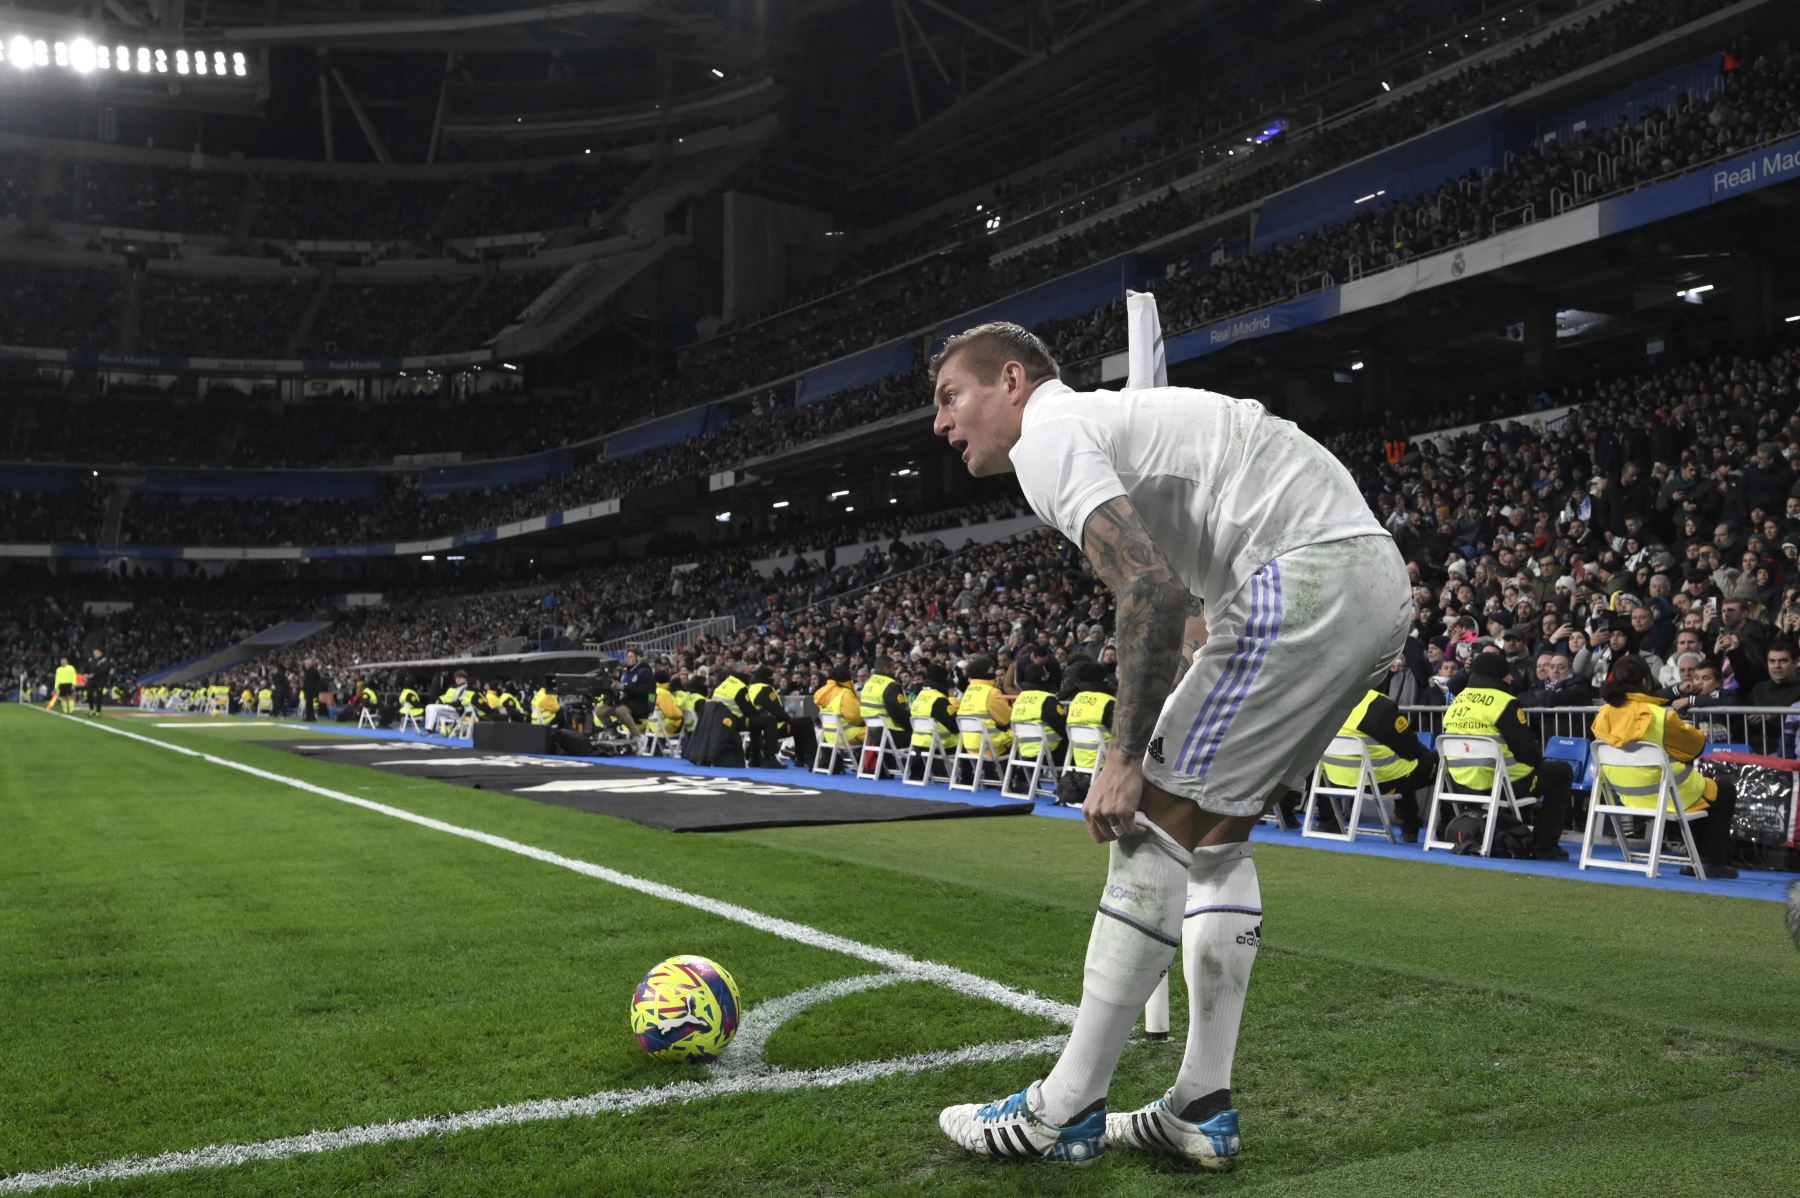 El centrocampista alemán del Real Madrid, Toni Kroos, se prepara para disparar desde la esquina durante el partido de fútbol de la liga española entre el Real Madrid CF y la Real Sociedad en el estadio Santiago Bernabéu de Madrid el 29 de enero de 2023.

Foto: AFP